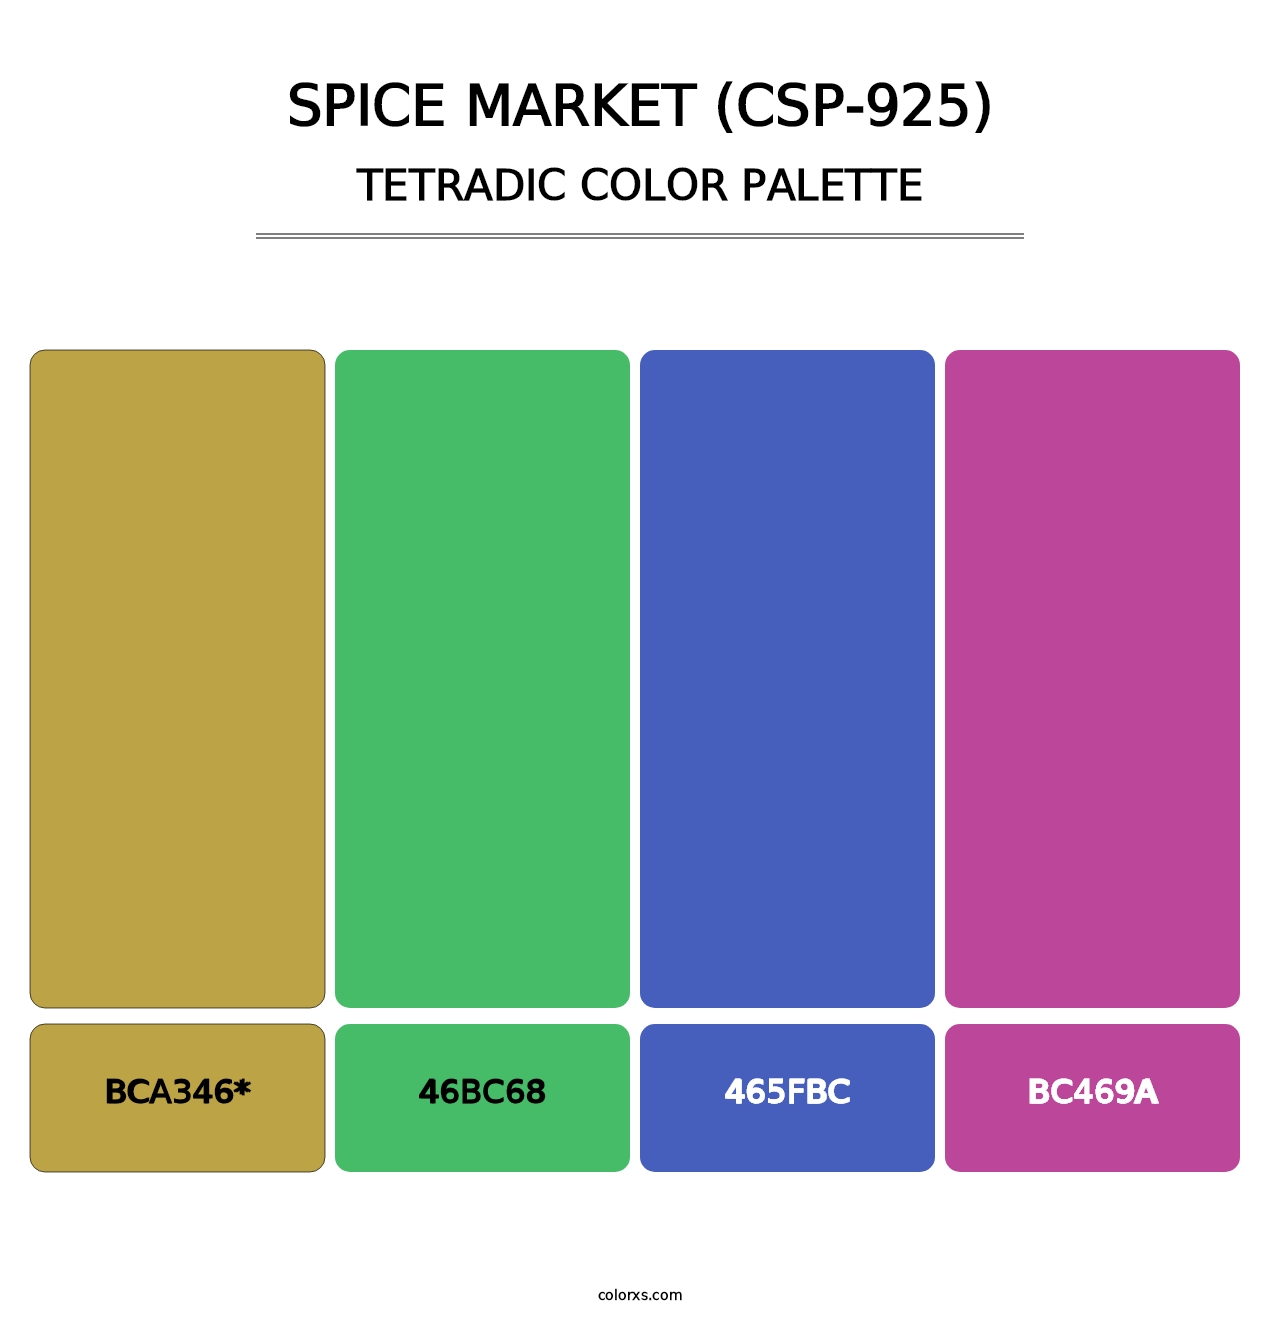 Spice Market (CSP-925) - Tetradic Color Palette